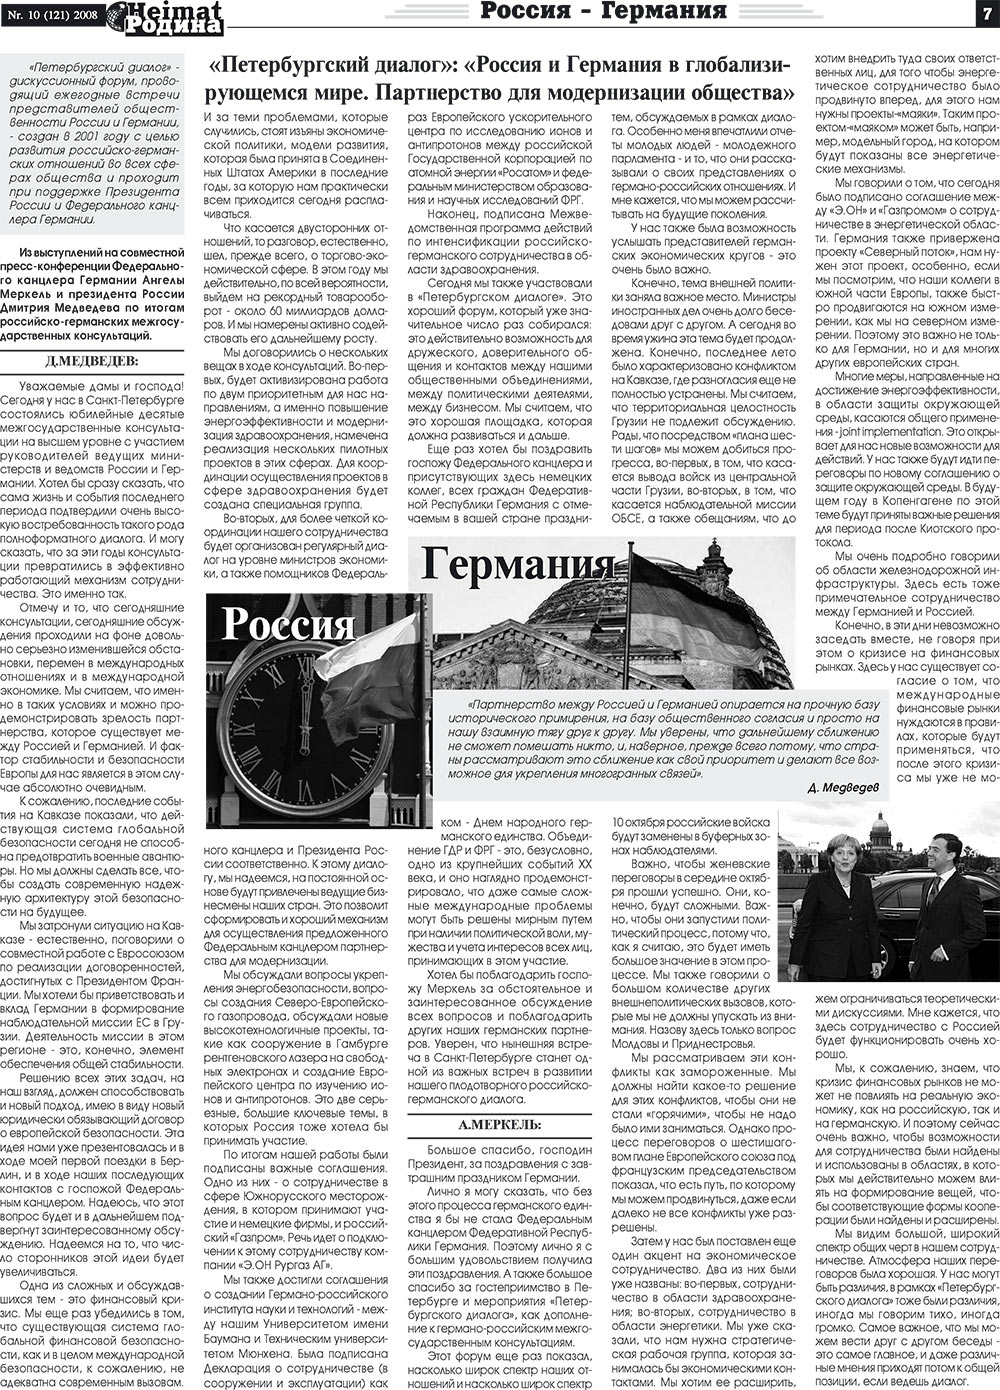 Heimat-Родина (газета). 2008 год, номер 10, стр. 7